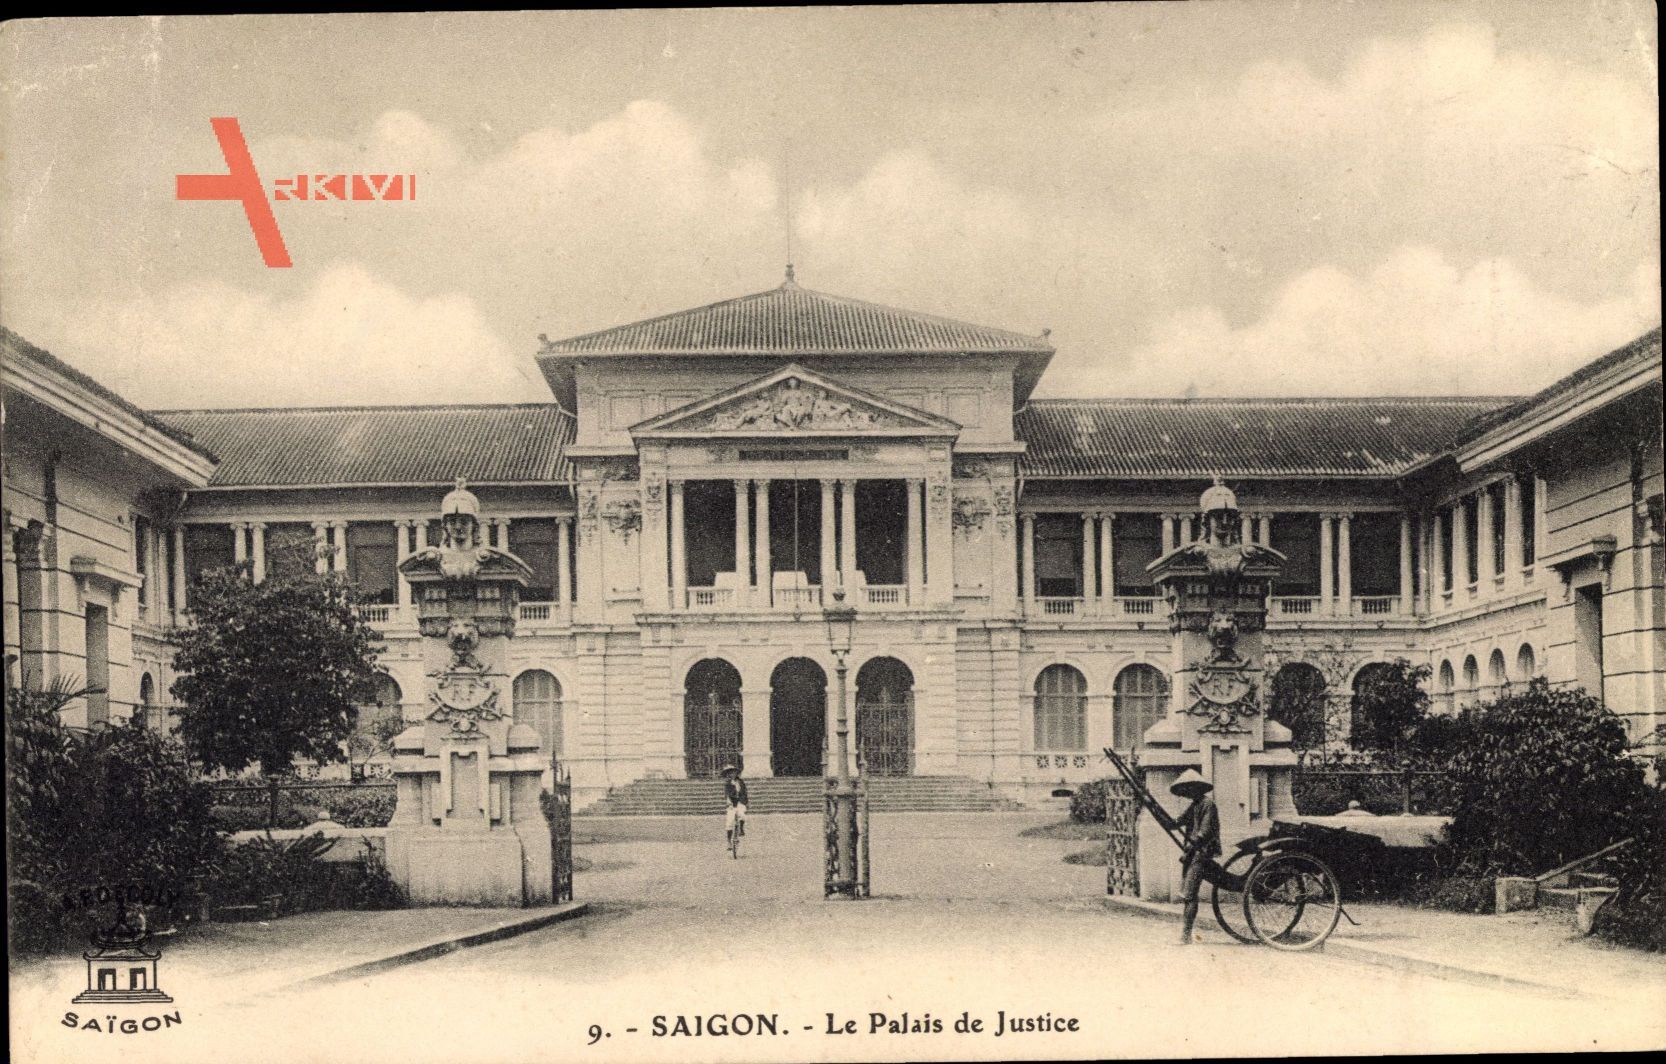 Saigon Cochinchine Vietnam, Le Palais de Justice, Justizpalast